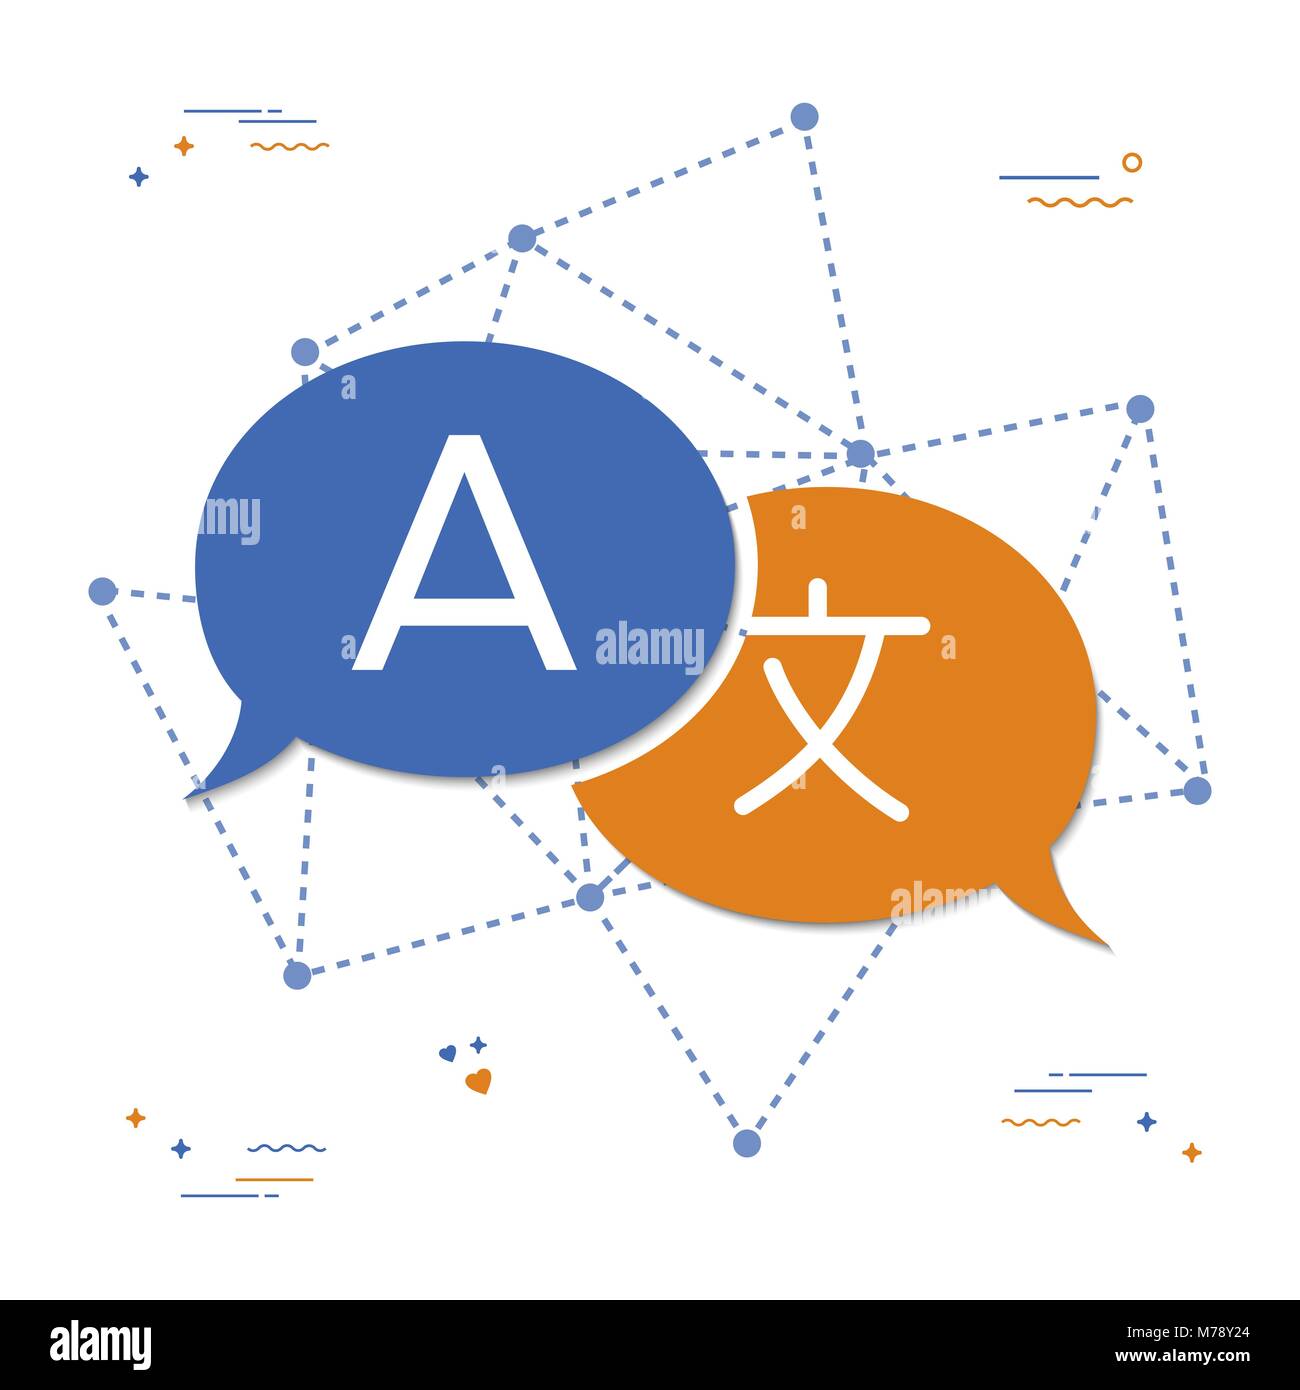 Sprache Übersetzung Symbol im Chat bubble Form. Internationale Kommunikation Unterhaltung Konzept Abbildung. EPS 10 Vektor. Stock Vektor